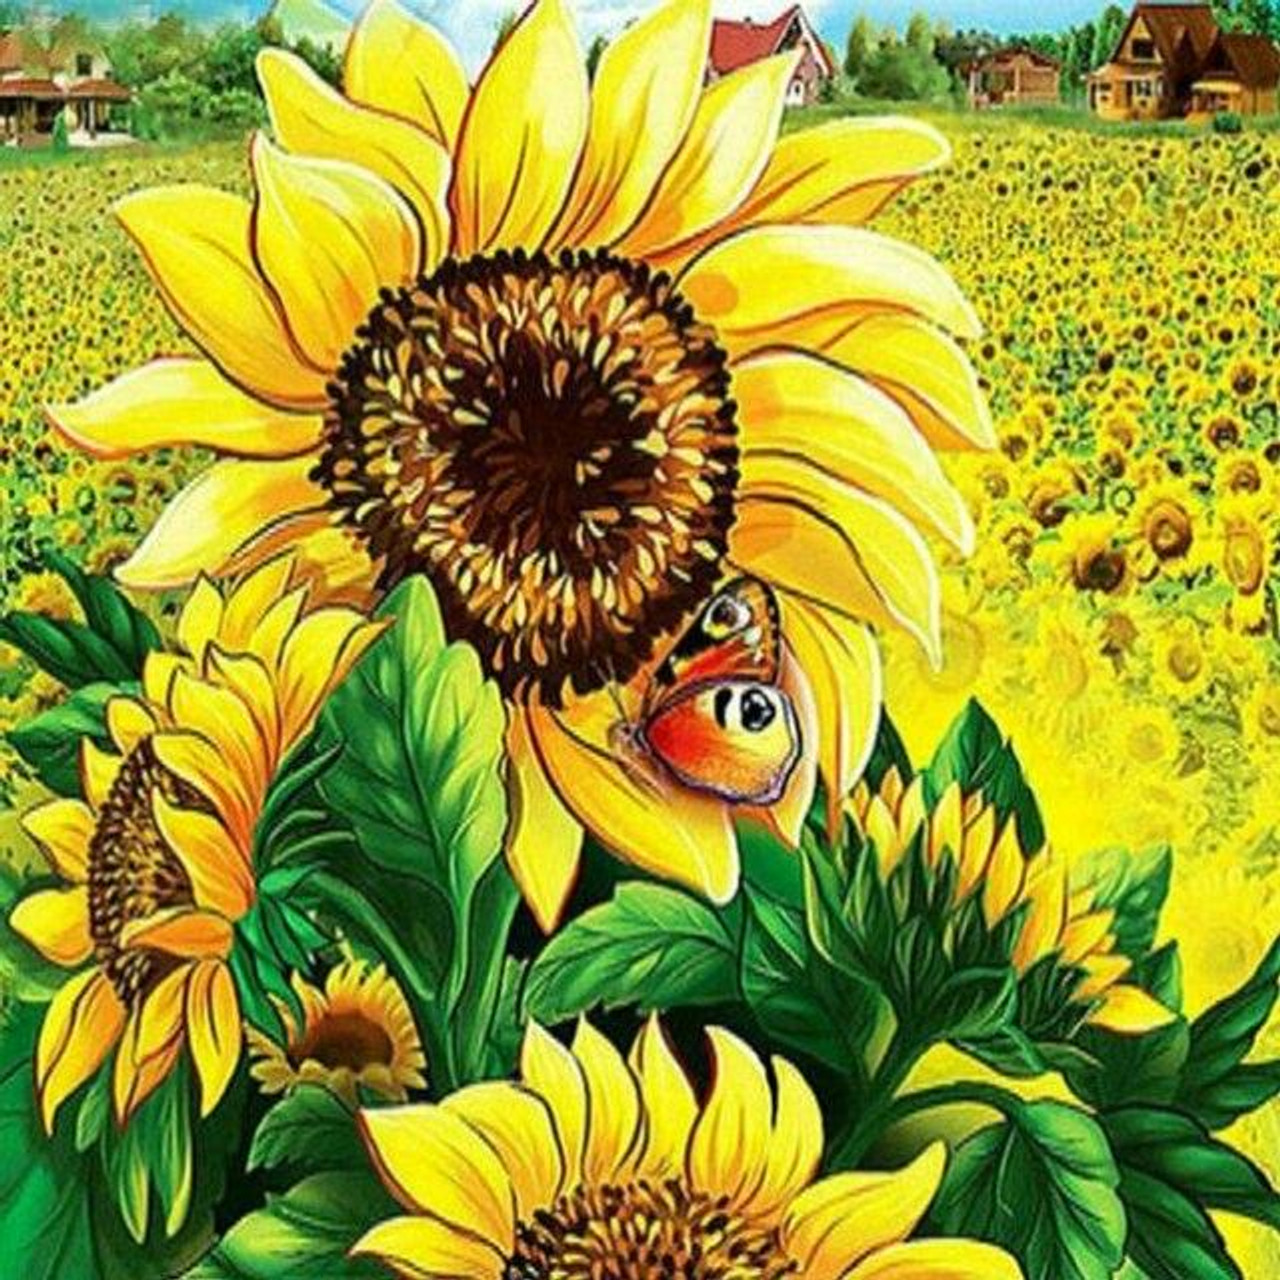 Sunflowers - 5D Diamond Painting 